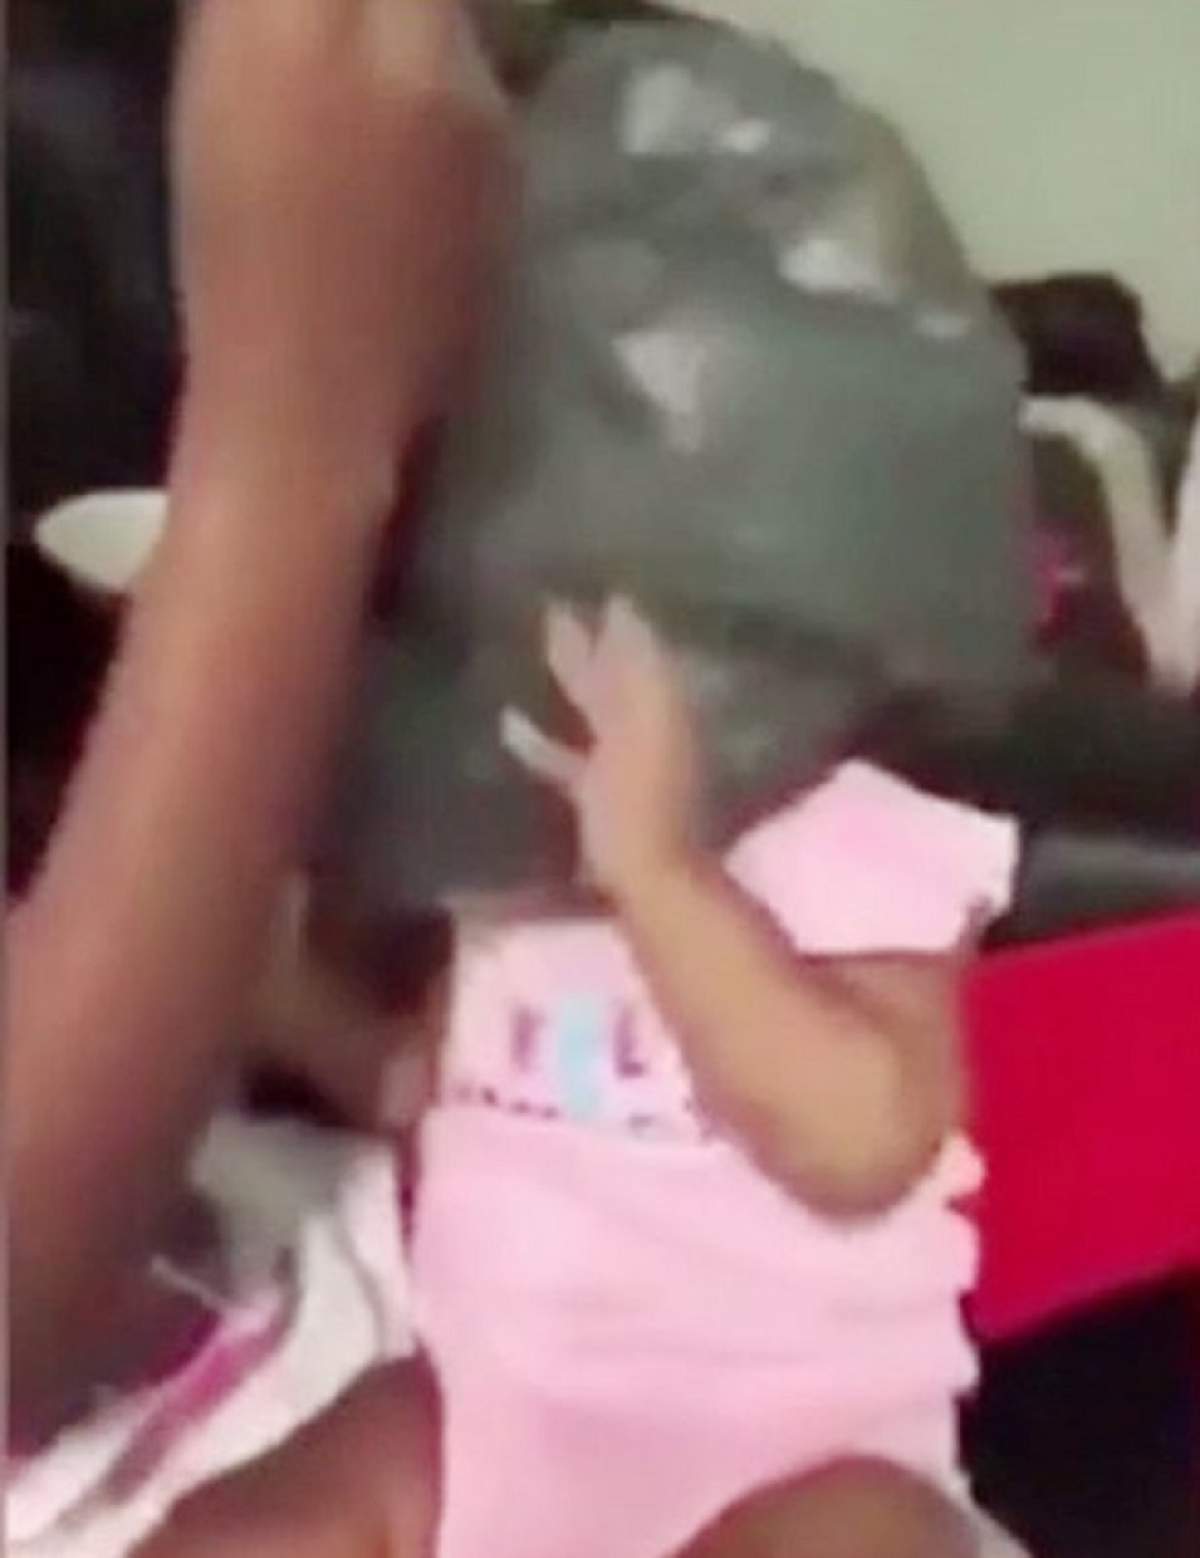 VIDEO / Tulburător! Doi adolescenţi sufocă un copil cu o pungă de plastic:  "Îl învăţăm disciplina!"